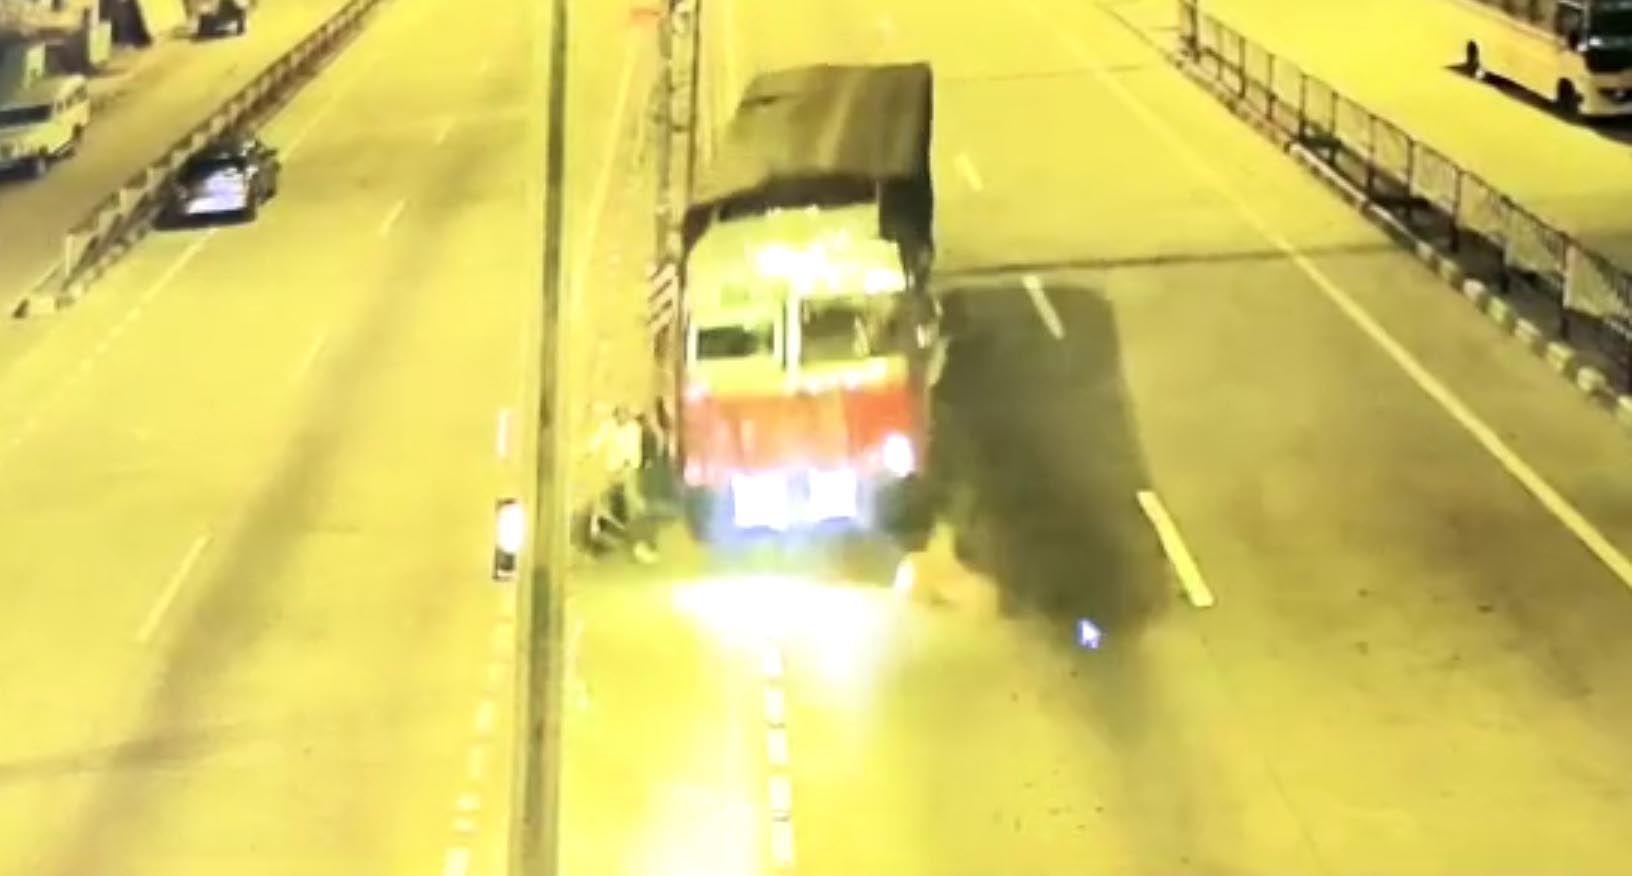 सिवनी में बेलगाम ट्रक ने 5 लोगों को कुचला, दो महिलाओं की मौत, 3 घायल.. देखें VIDEO